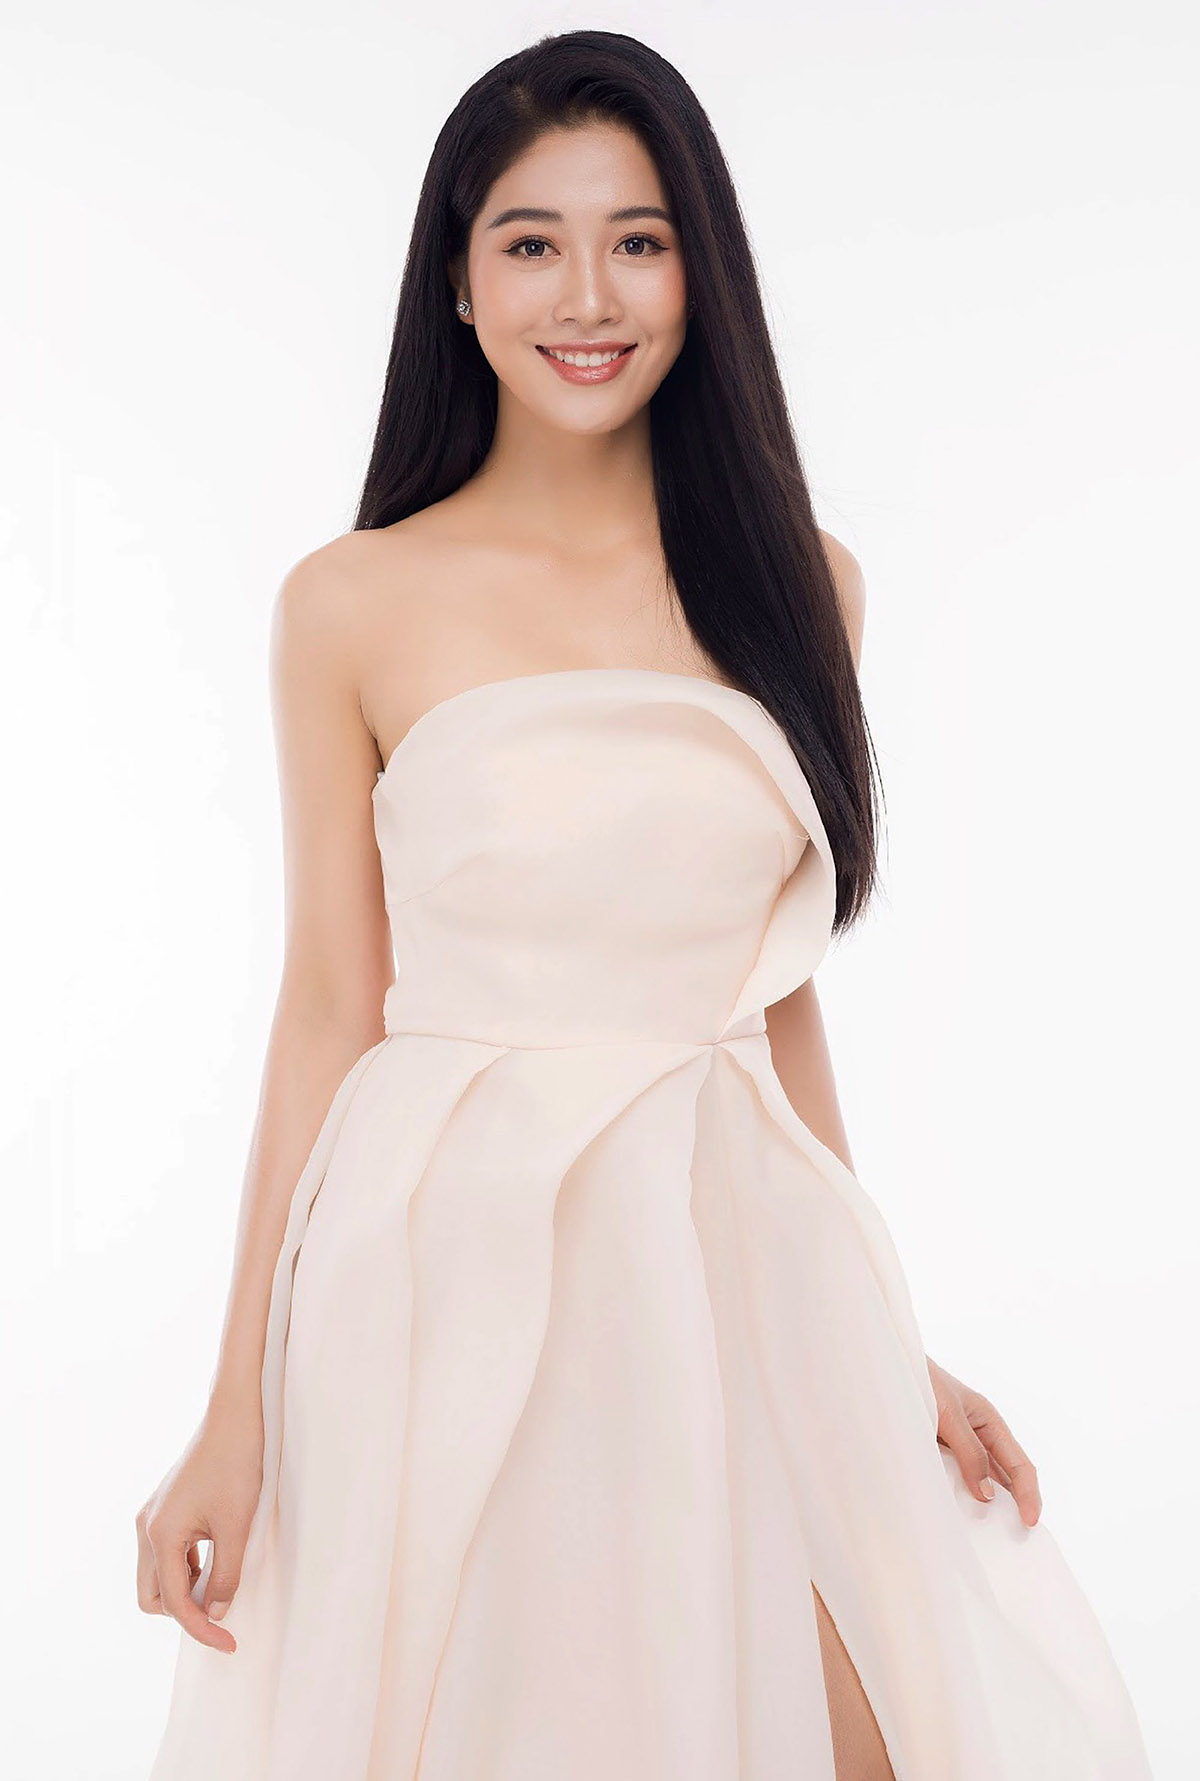 Đặng Vân Ly, tiếp viên Hãng Hàng không Vietjet, 1 trong 10 người đẹp nhất cuộc thi Hoa hậu Việt Nam 2020